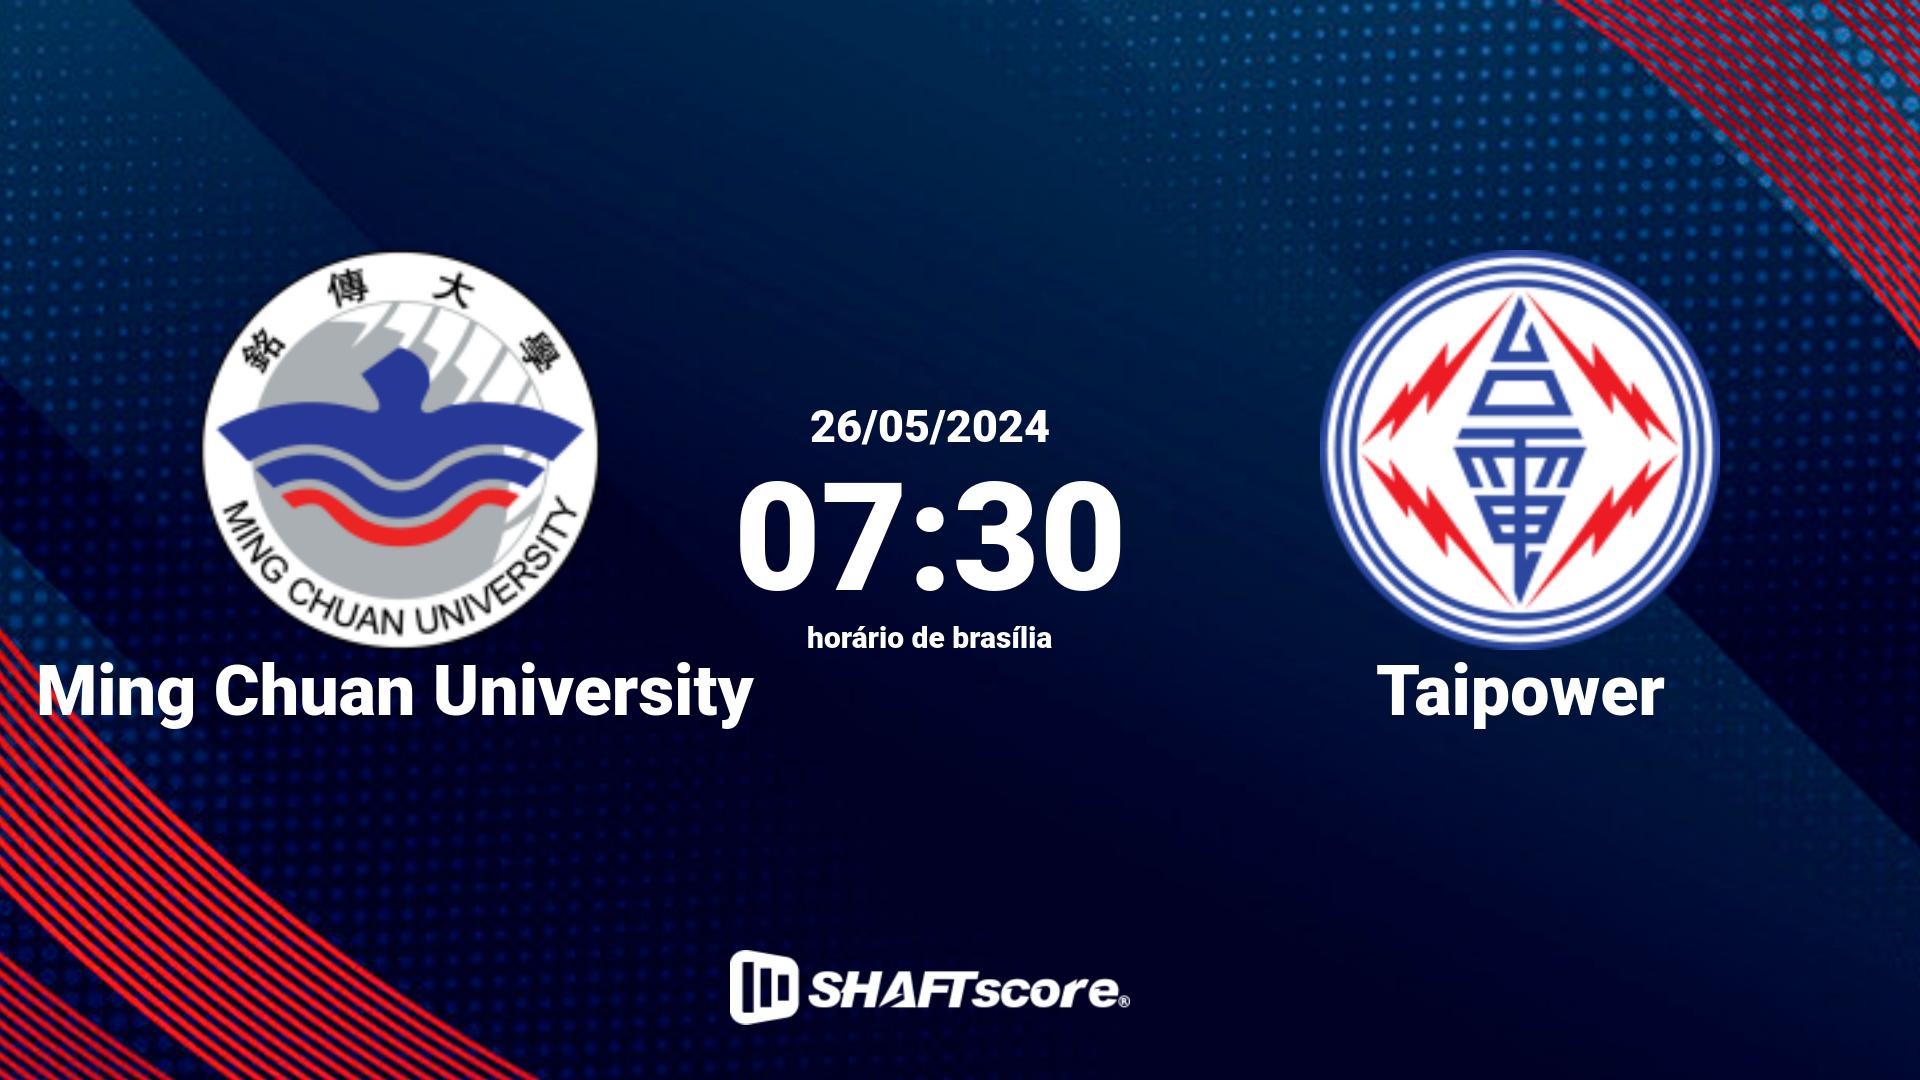 Estatísticas do jogo Ming Chuan University vs Taipower 26.05 07:30